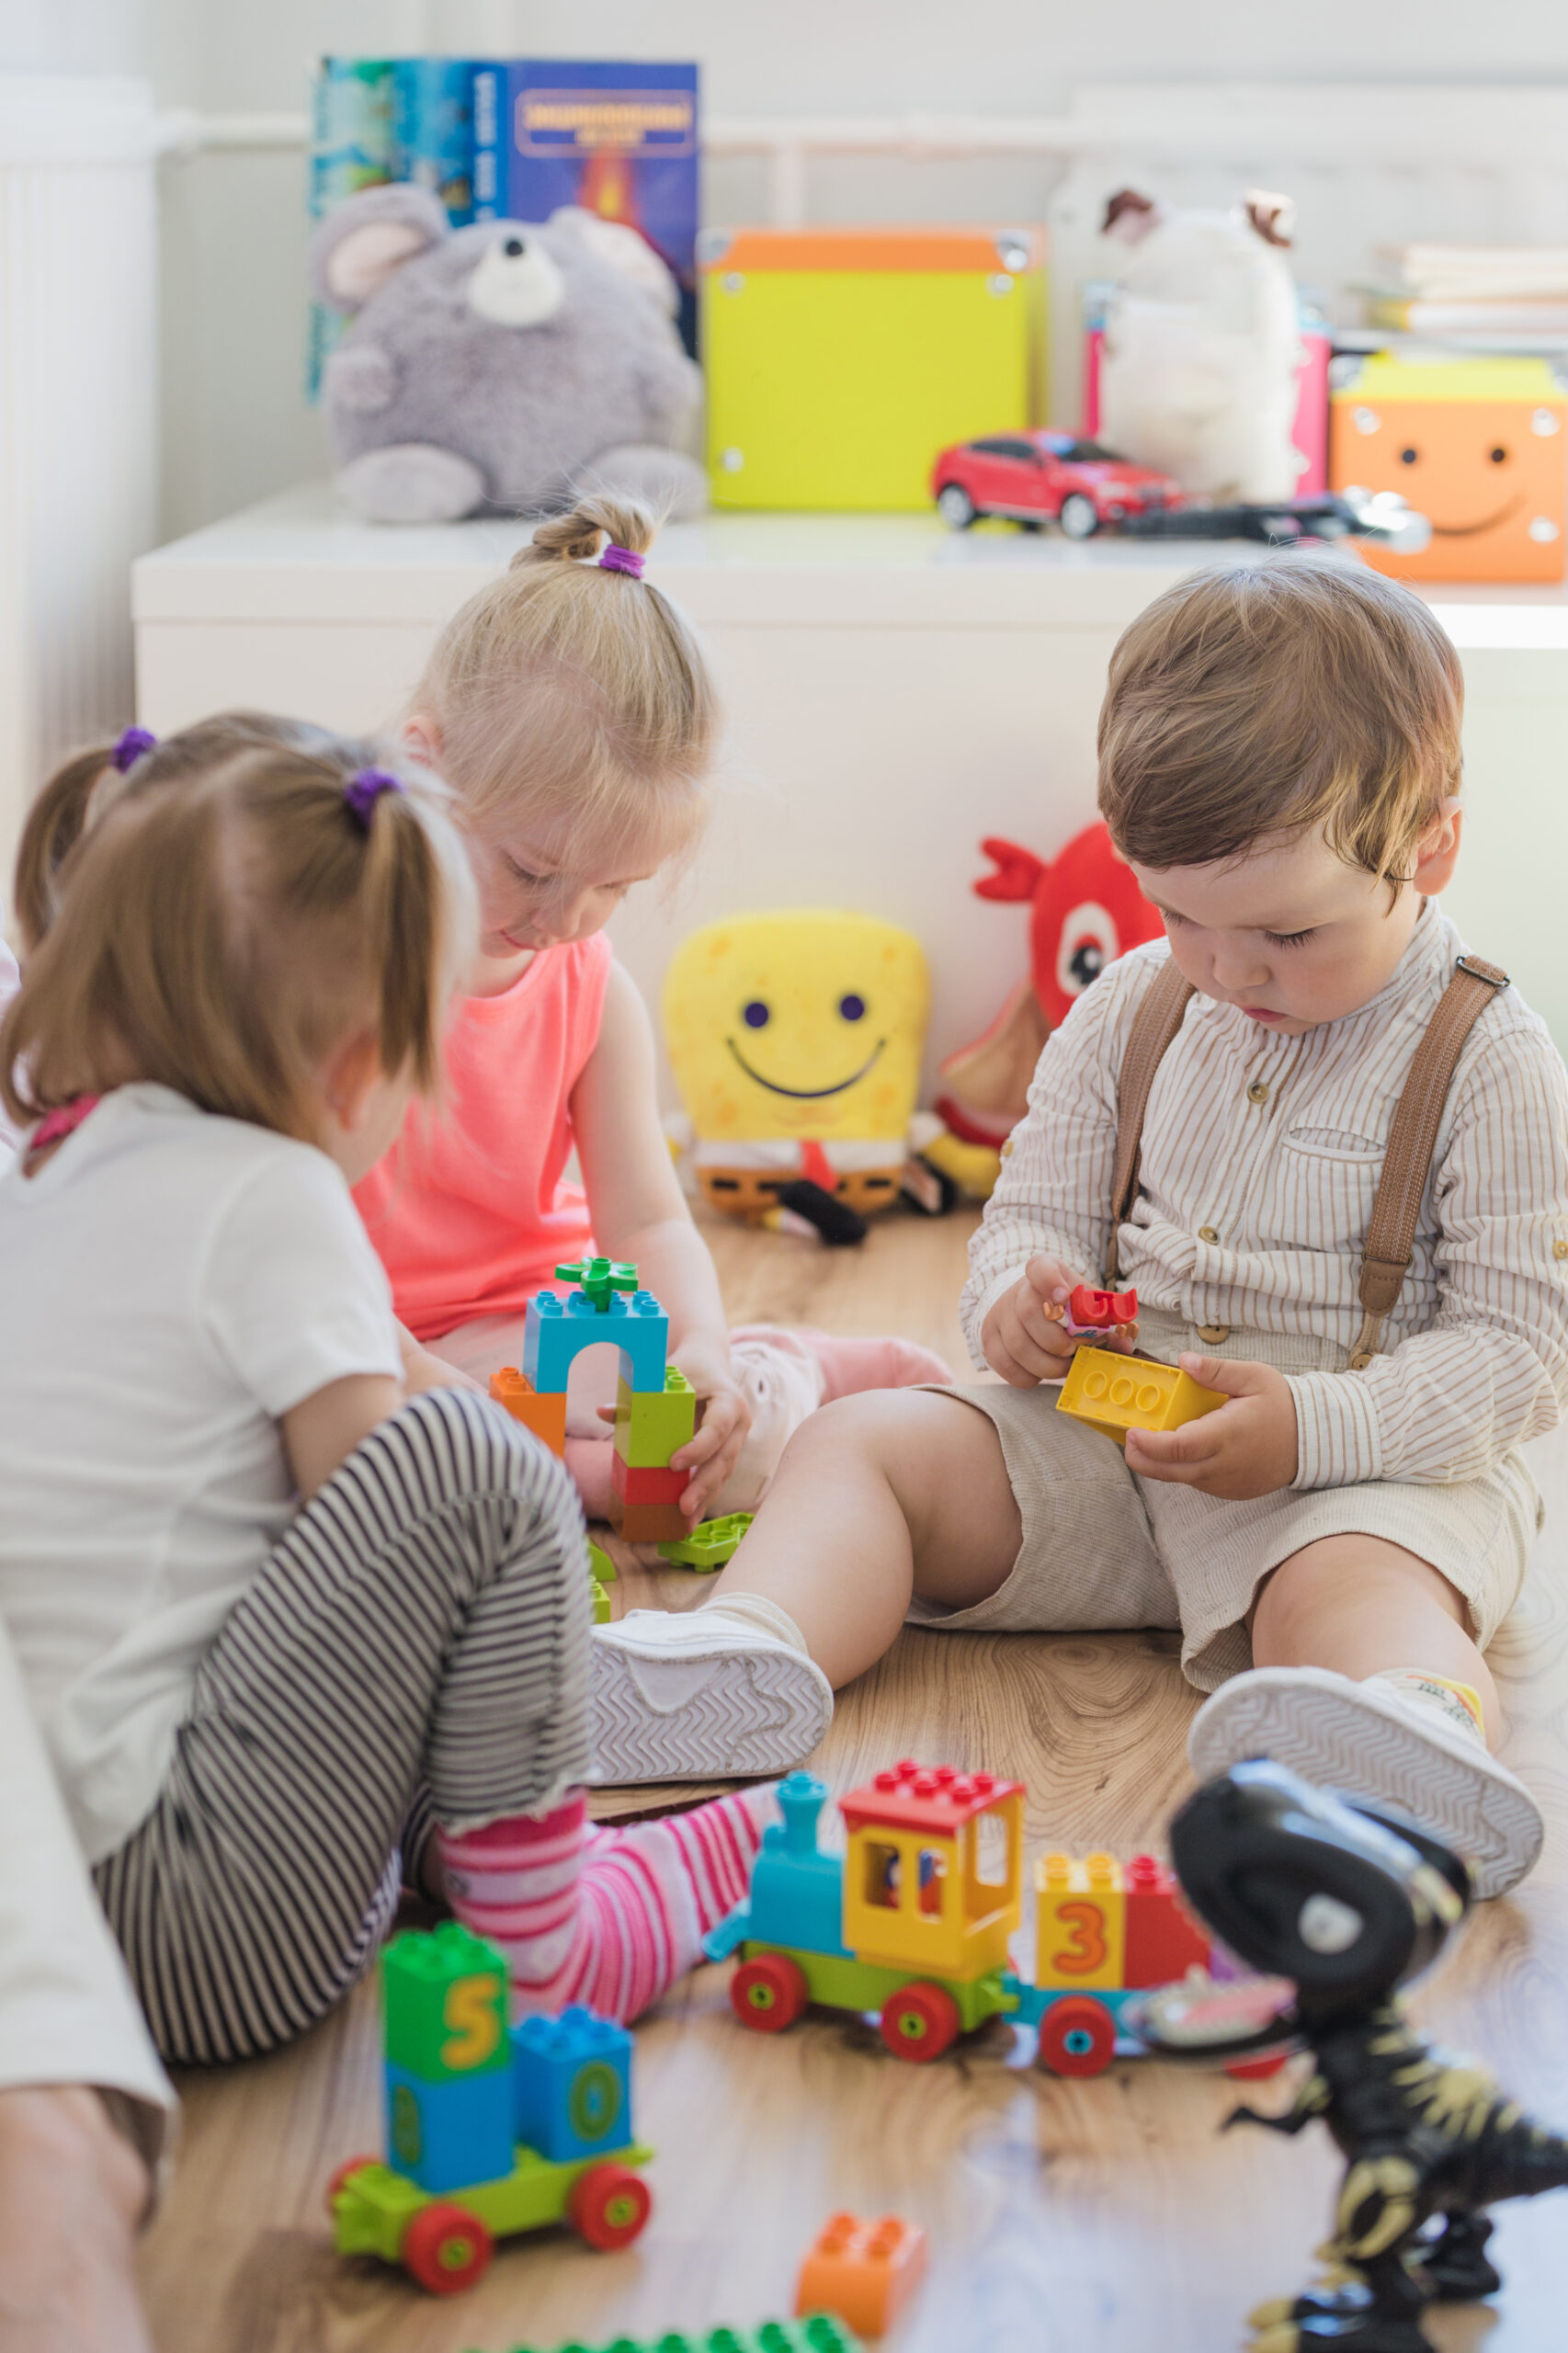 Dzieci bawiące się zabawkami, chłopiec trzyma w ręku dwa klocki, dwie dziewczynki bawią się w układanie zamku z klocków.